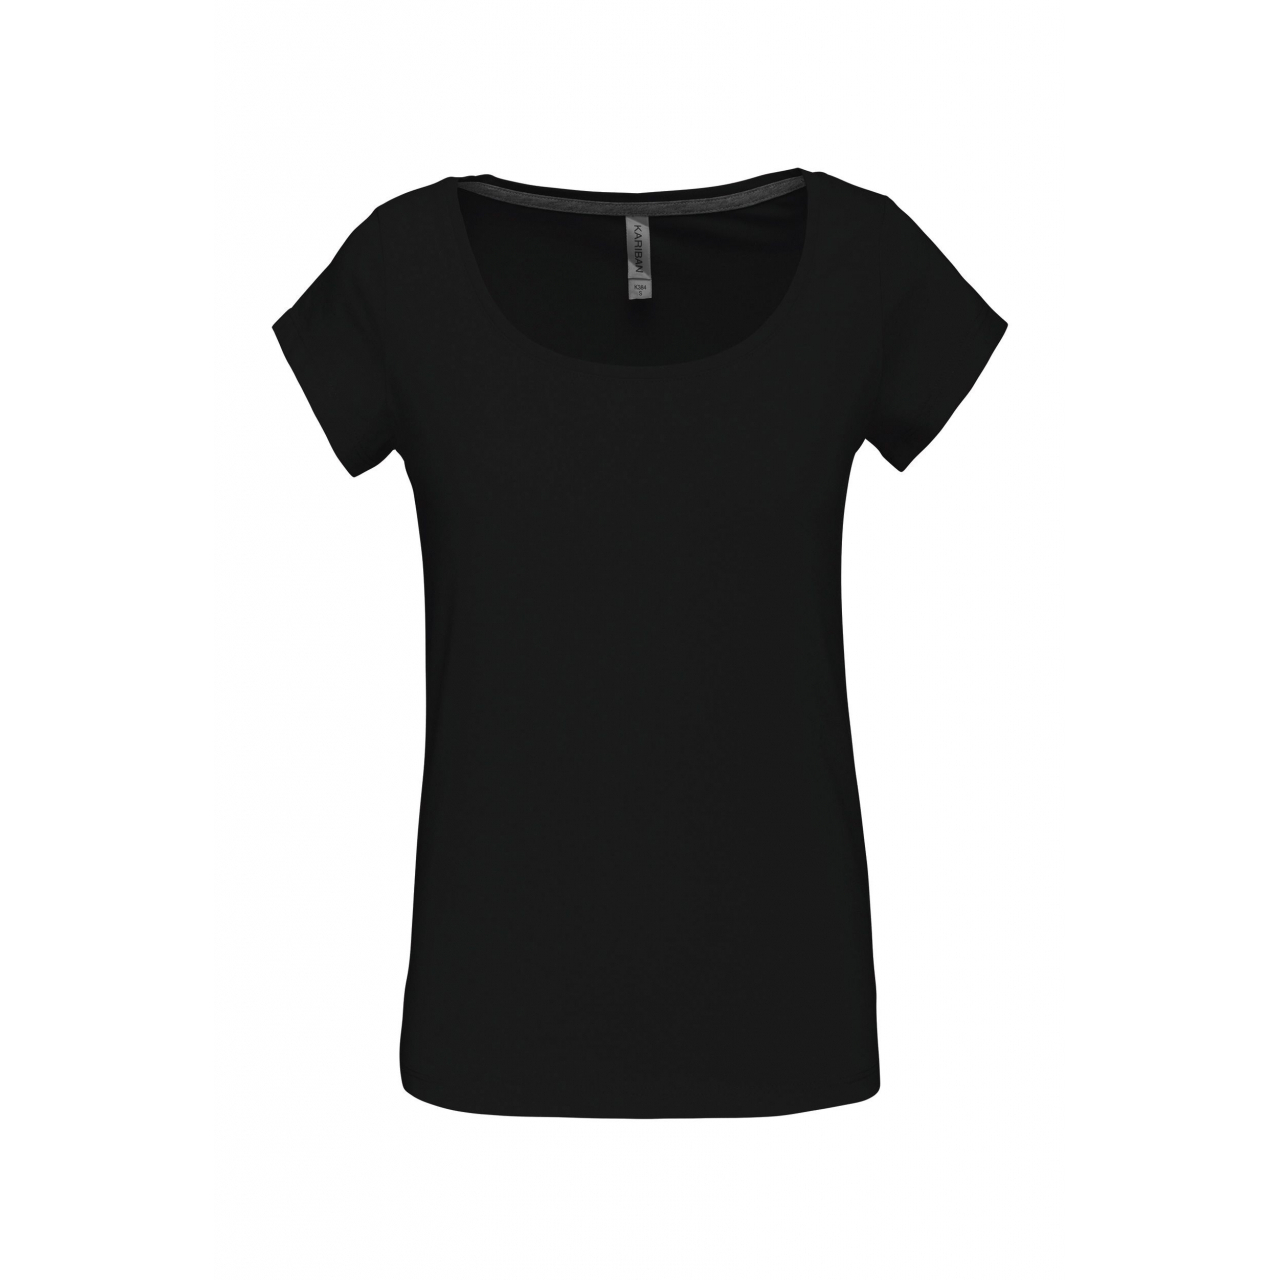 Dámské tričko Kariban s lodičkovým výstřihem - černé, M